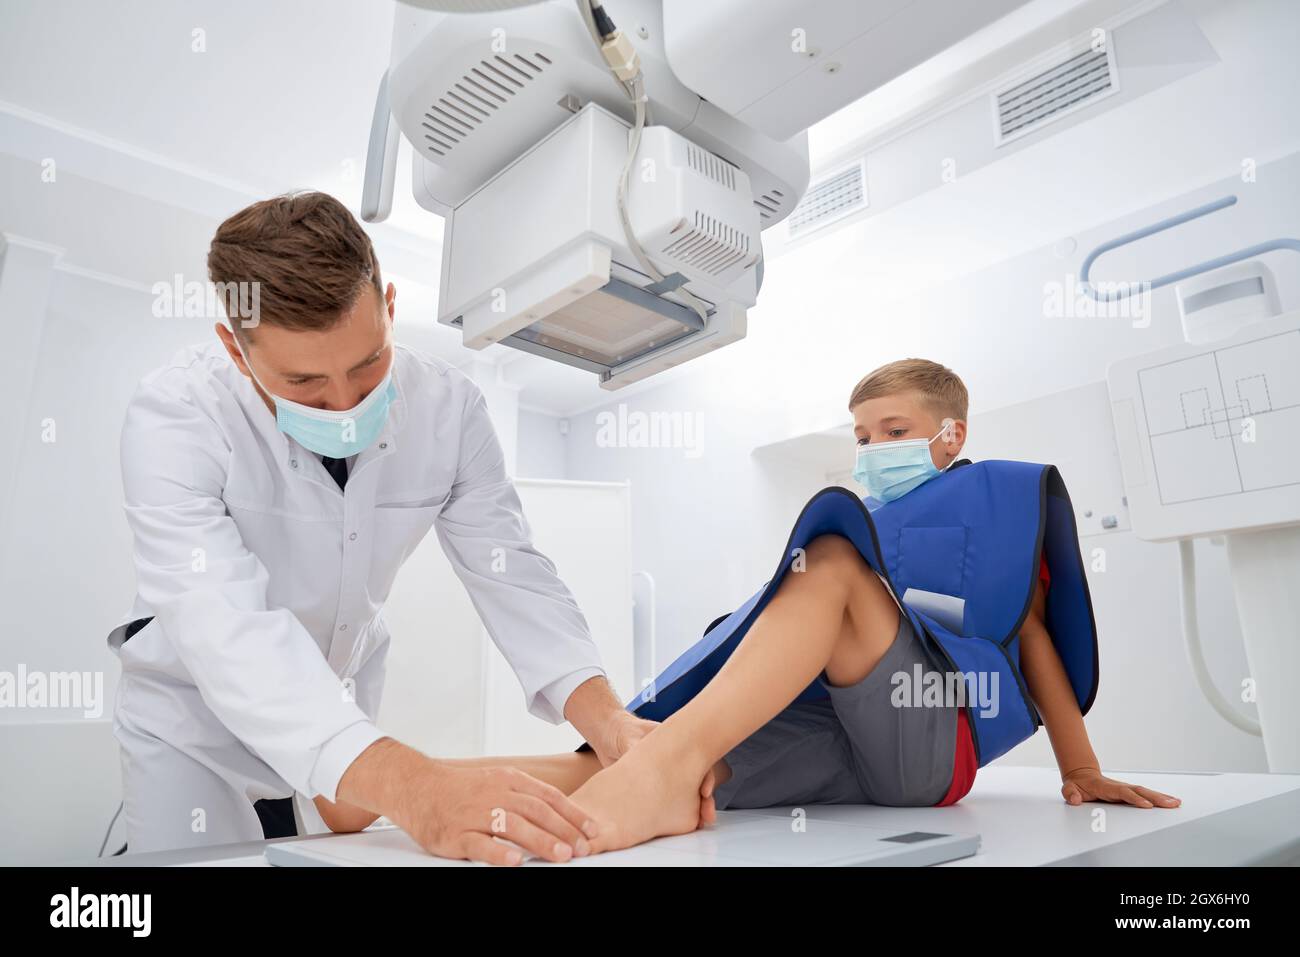 Professioneller Arzt in weißer Uniform, der eine ärztliche Untersuchung vor der Ultraschalldiagnostik macht. Junge sitzt in der Klinik und checken nach Schmerzen in den Beinen ein. Konzept der Kindermedizin. Stockfoto